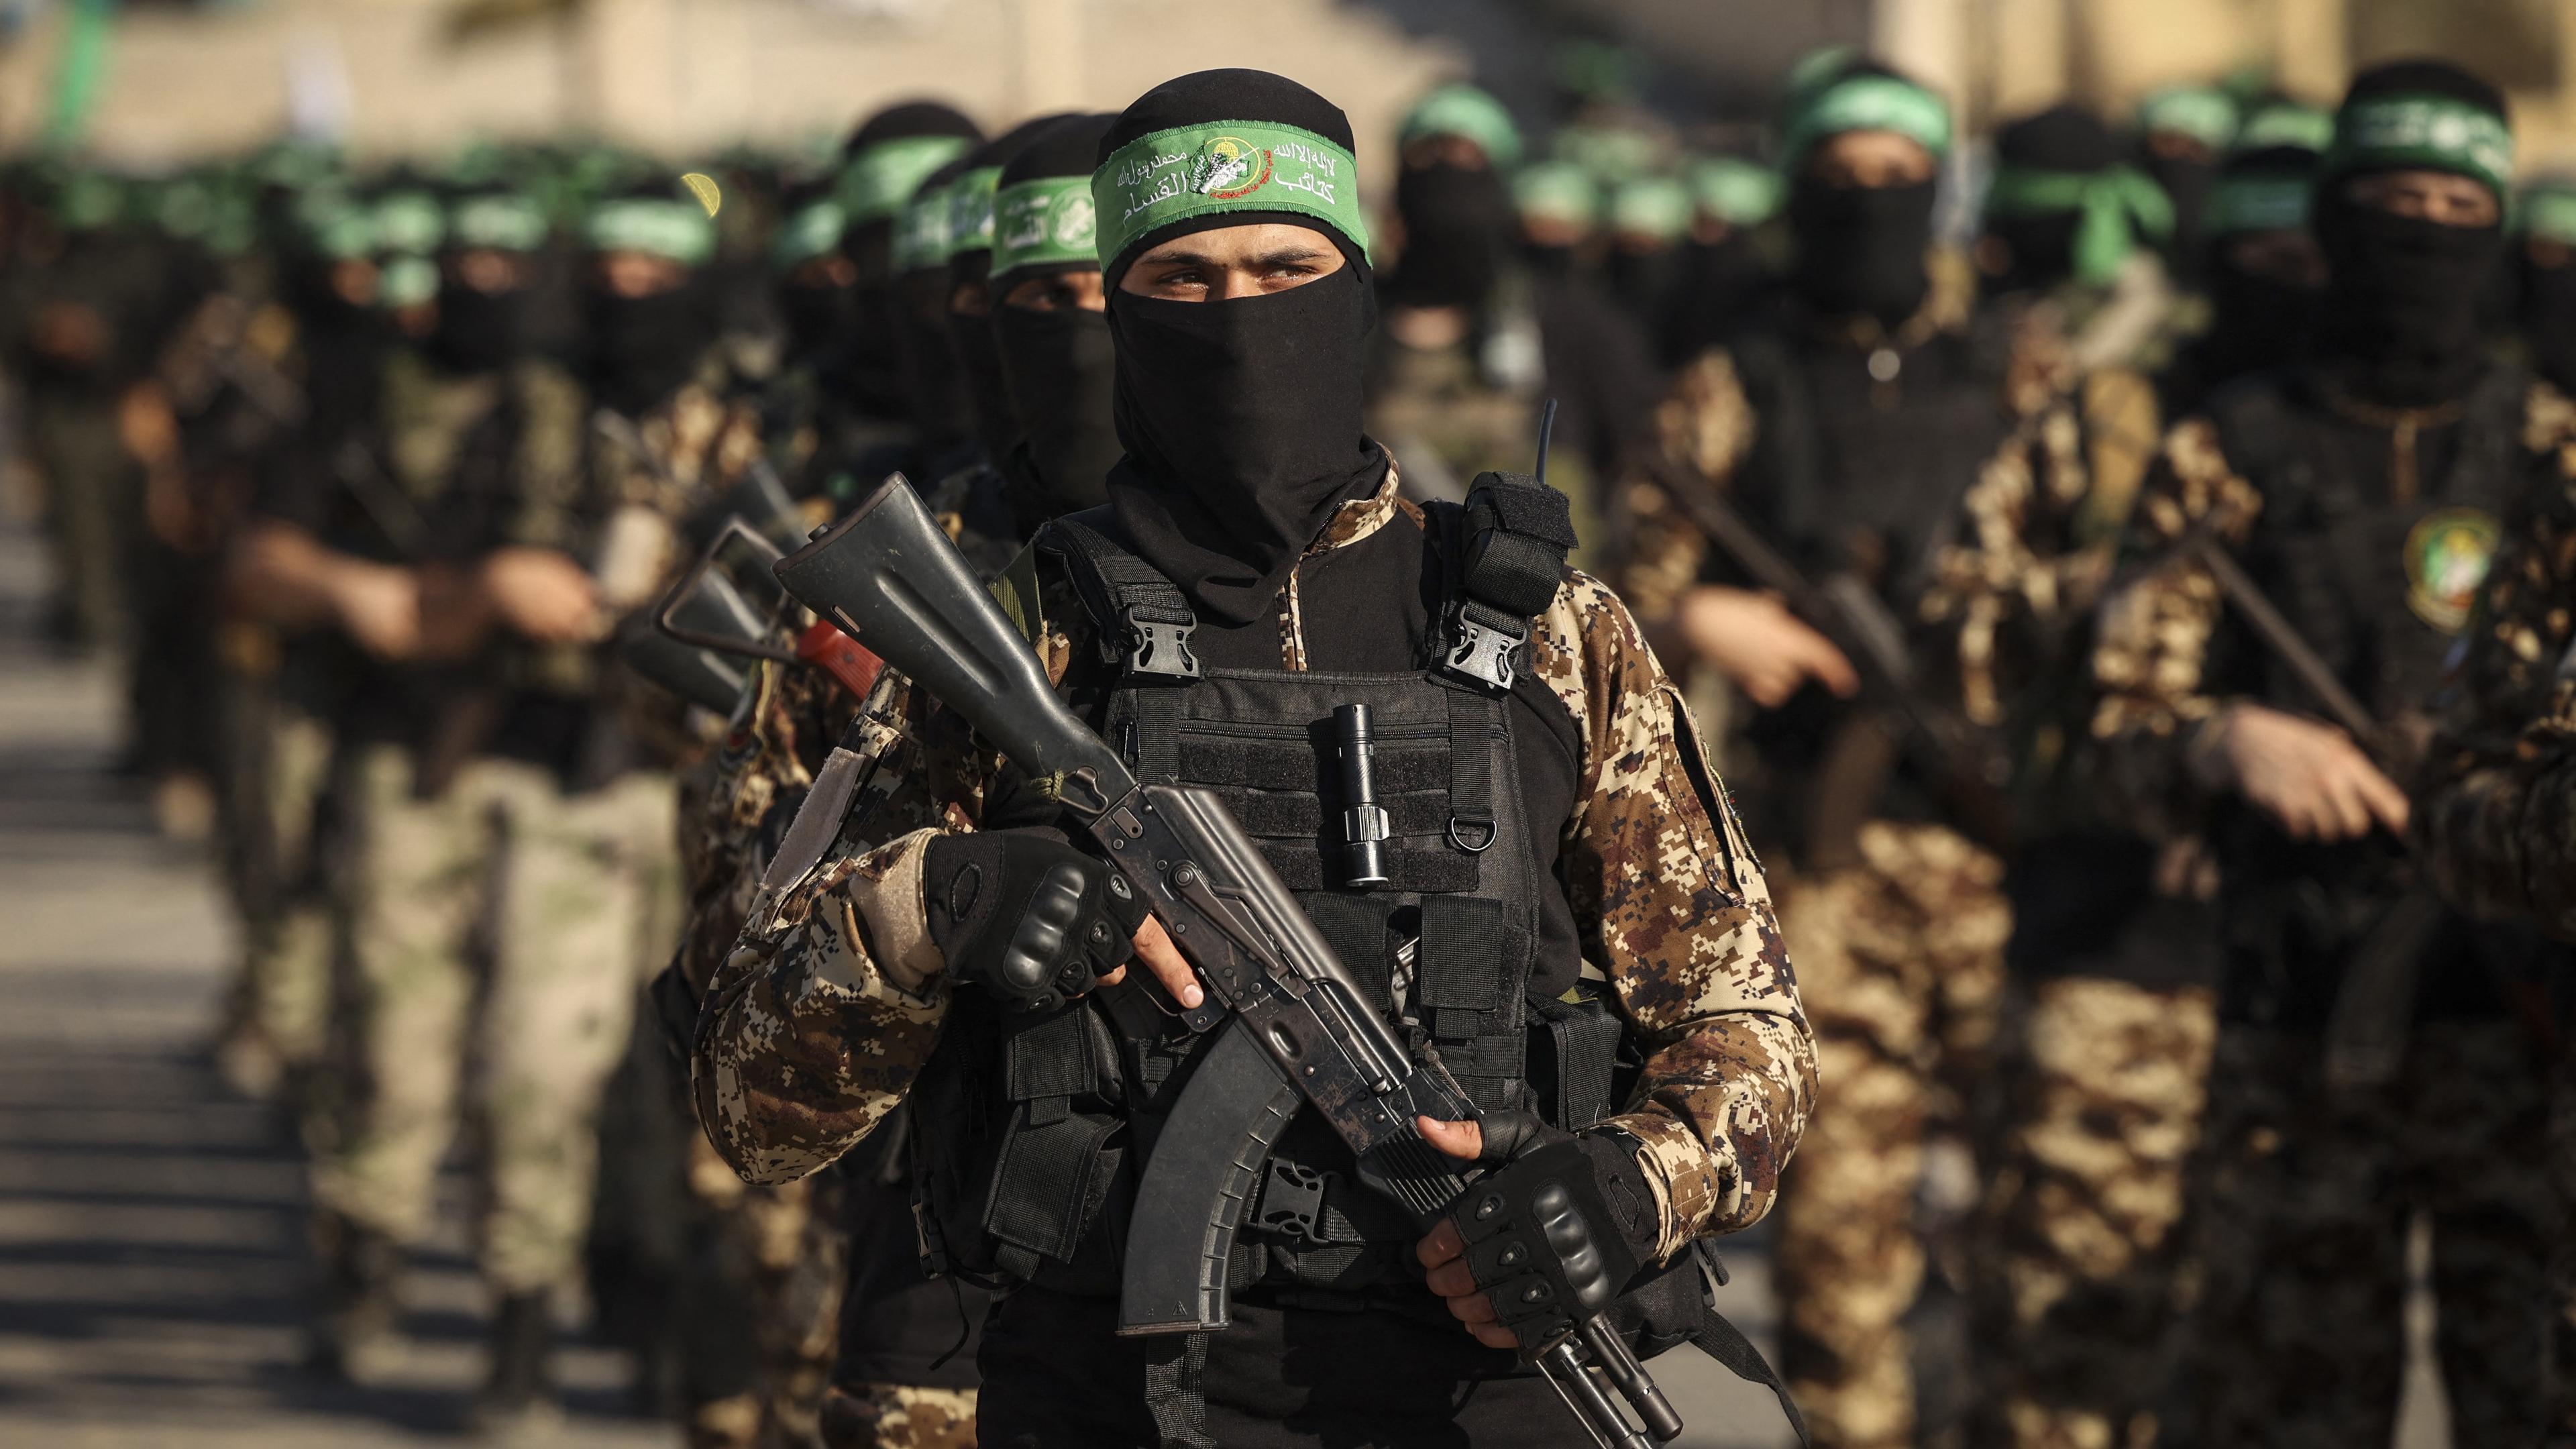 Medlemmar av Hamas väpnade gren, al-Qassambrigaden. Israels underrättelsetjänst har kritiserats för att man inte kunde förhindra attacken den 7 oktober. Foto: Mahmud Hams/AFP via Getty Images